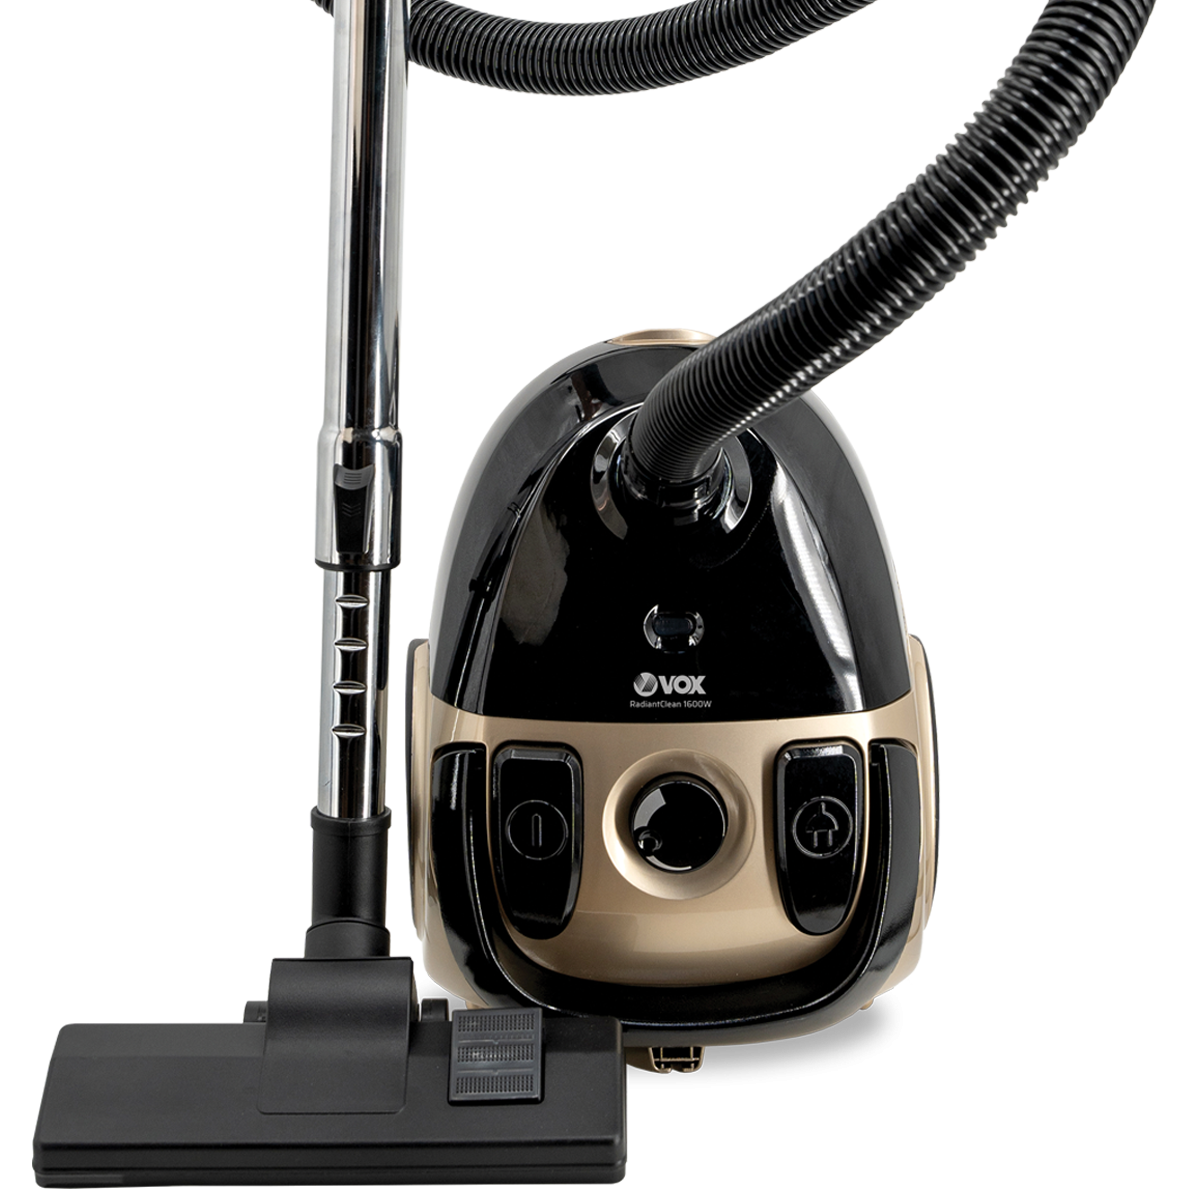 Vacuum cleaner SL 777 